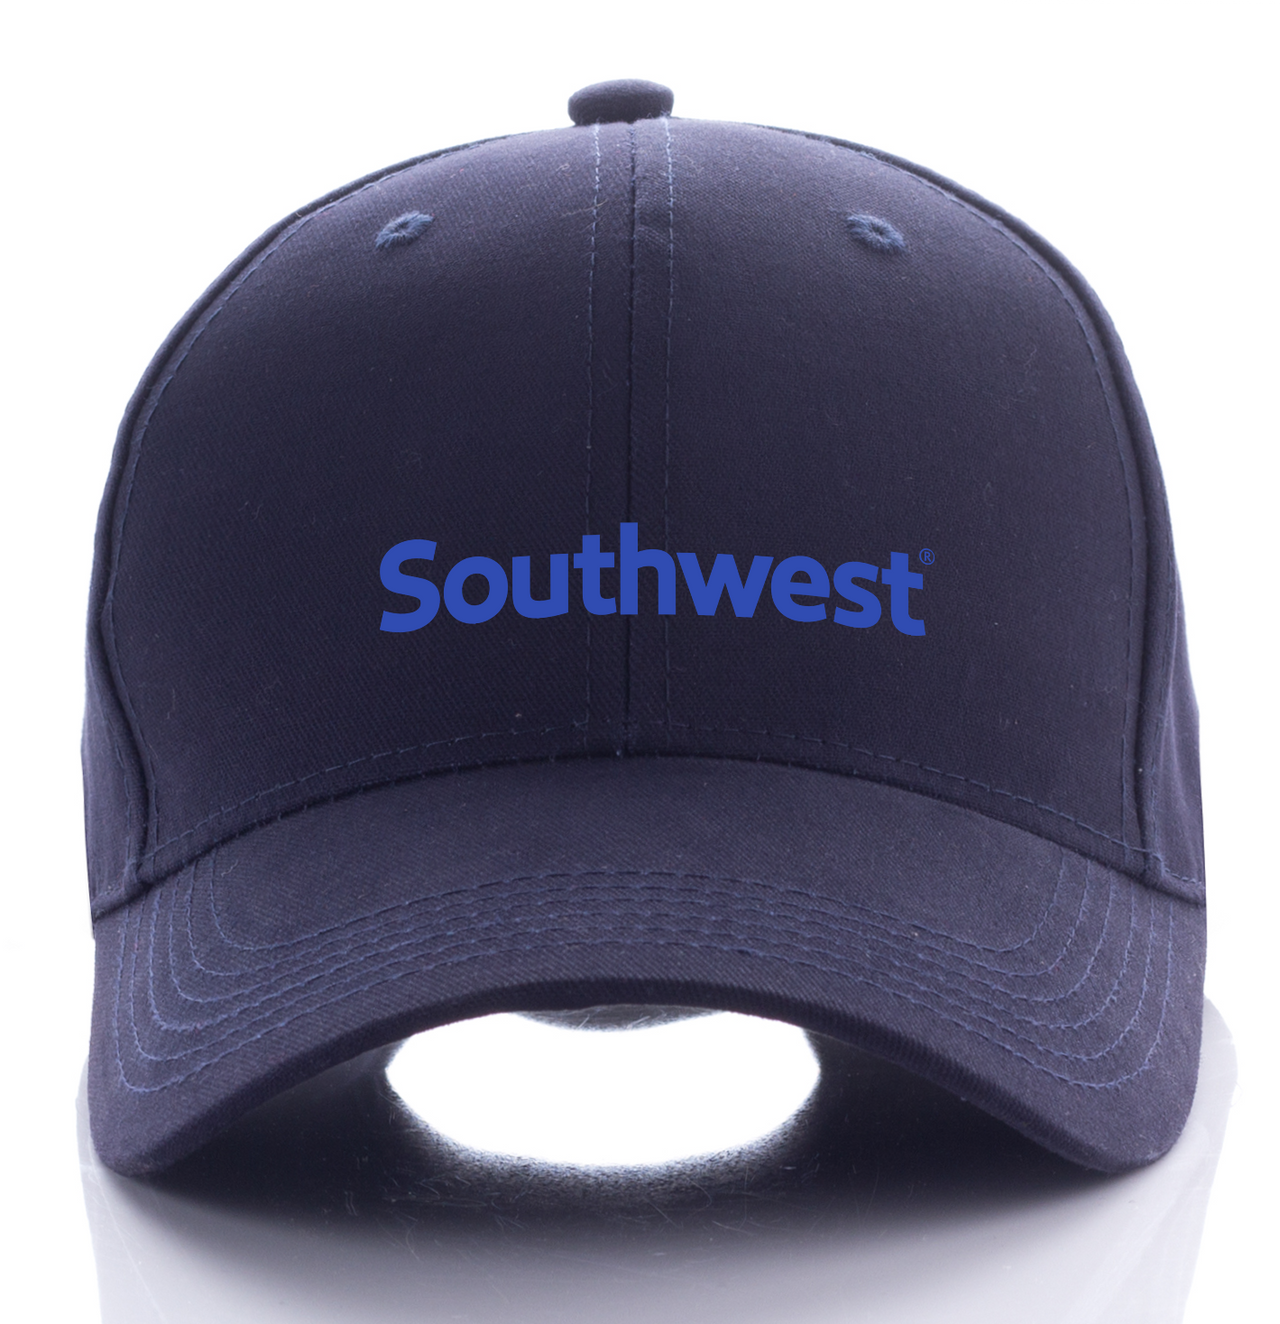 SOUTHWEST AIRLINE DESIGNED CAP